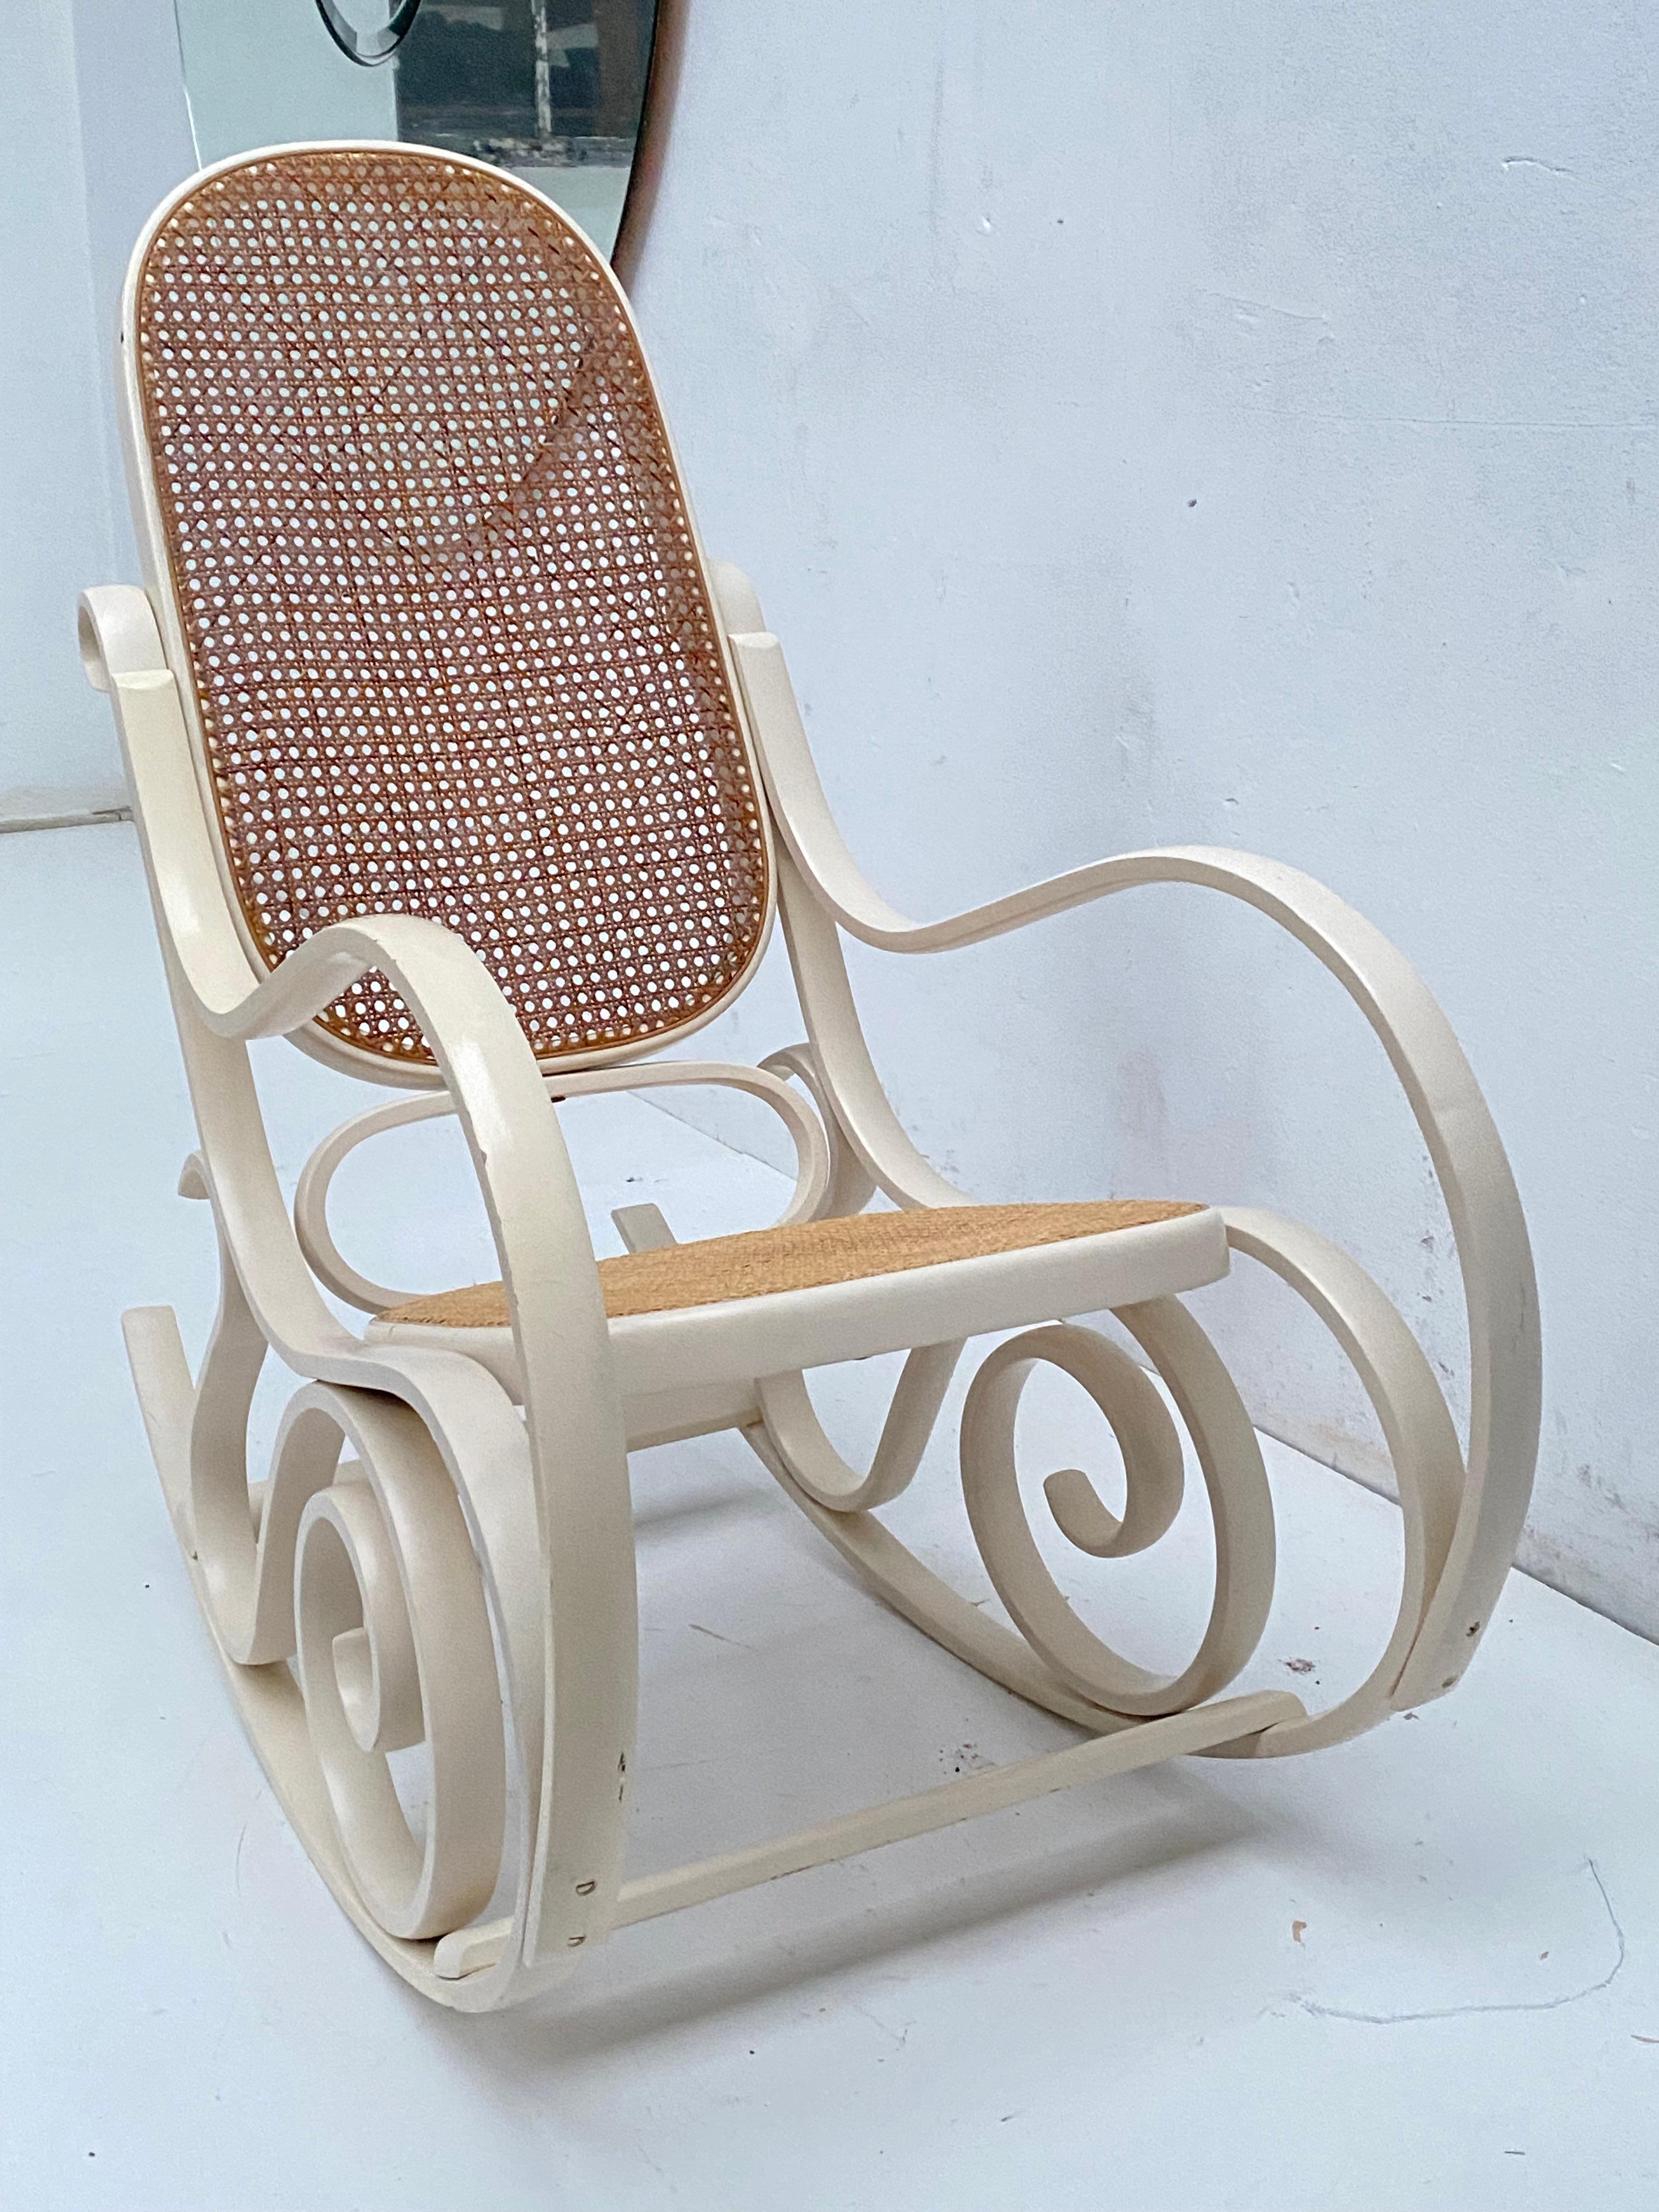 Magnifique fauteuil à bascule italien des années 1970 par Luigi Crassevig pour Crassevig

Bentwood Beeche qui a été teinté en blanc 

Cette chaise a été fabriquée en étuvant du bois de hêtre dans ces formes courbes, de la même manière que les